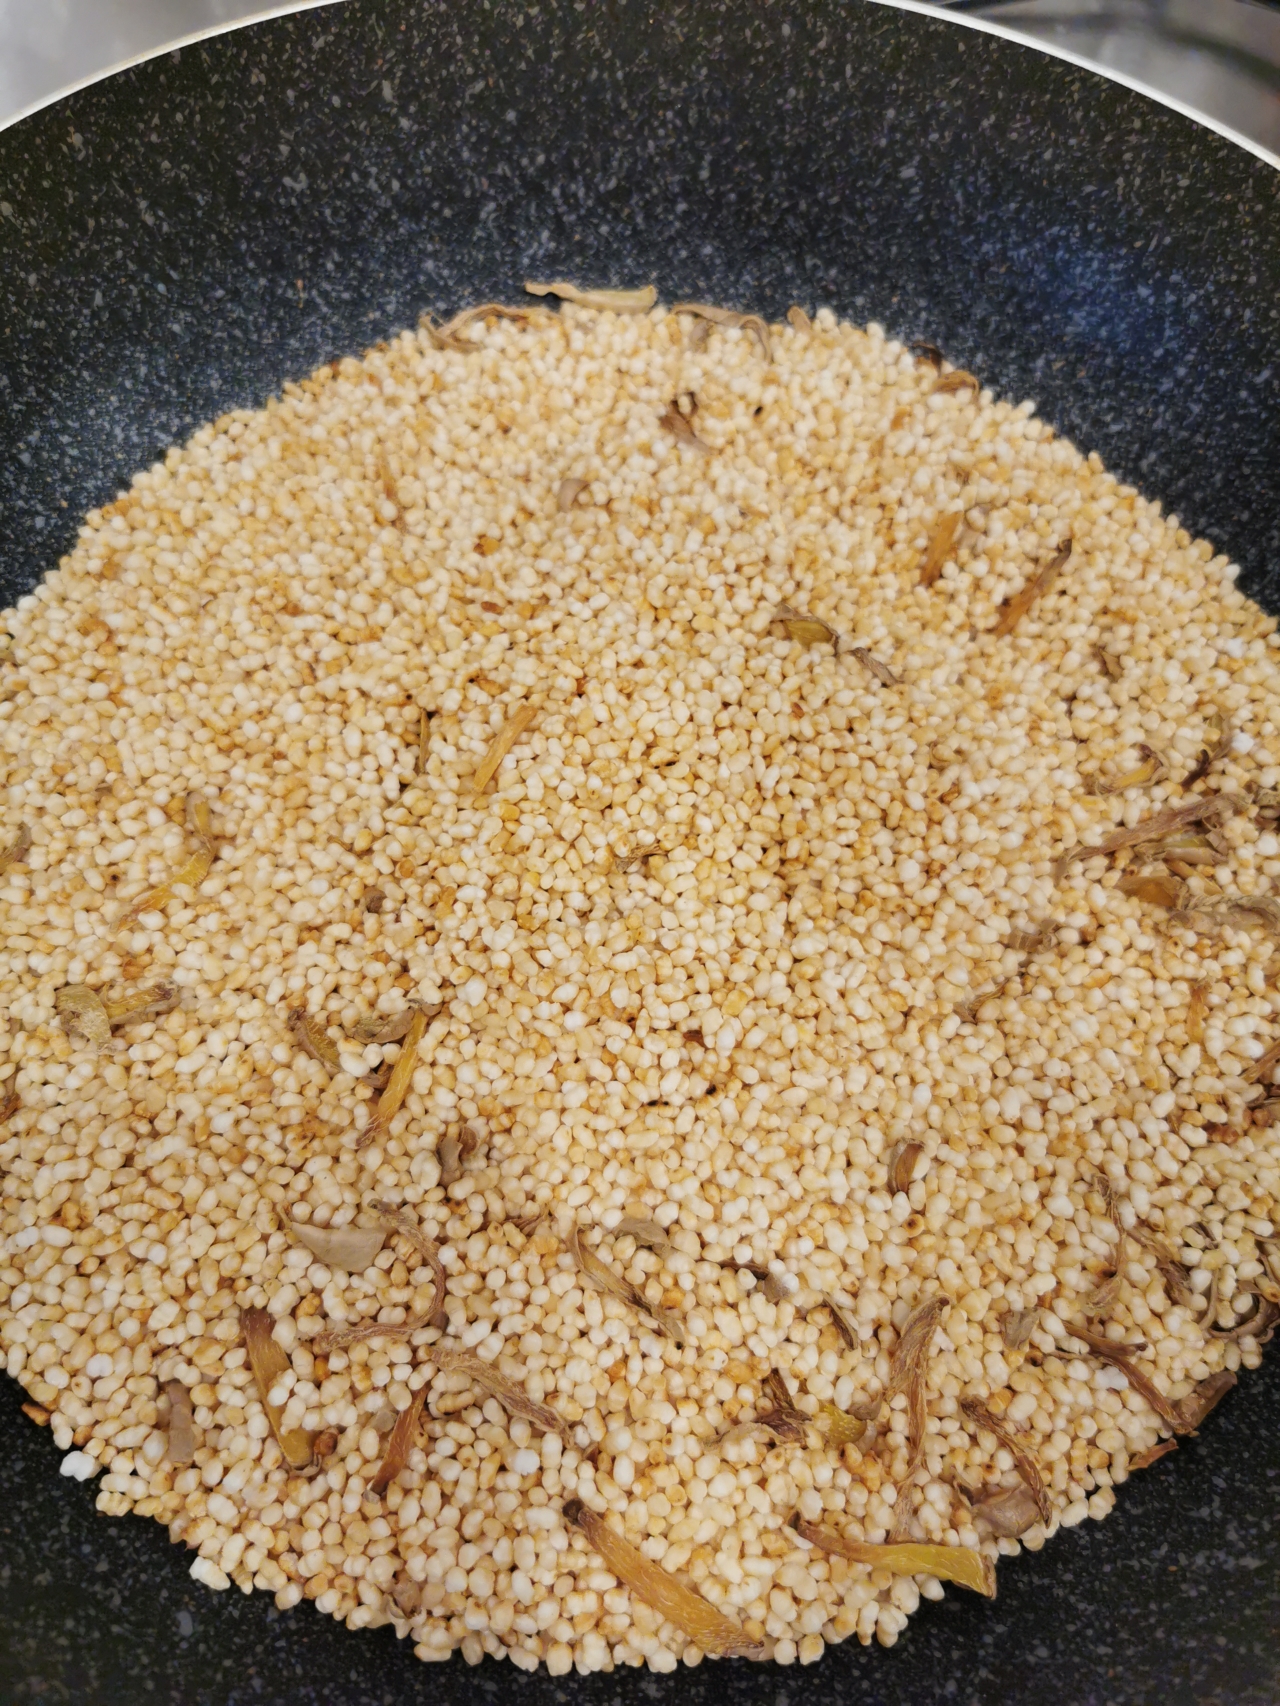 姜丝炒米的做法